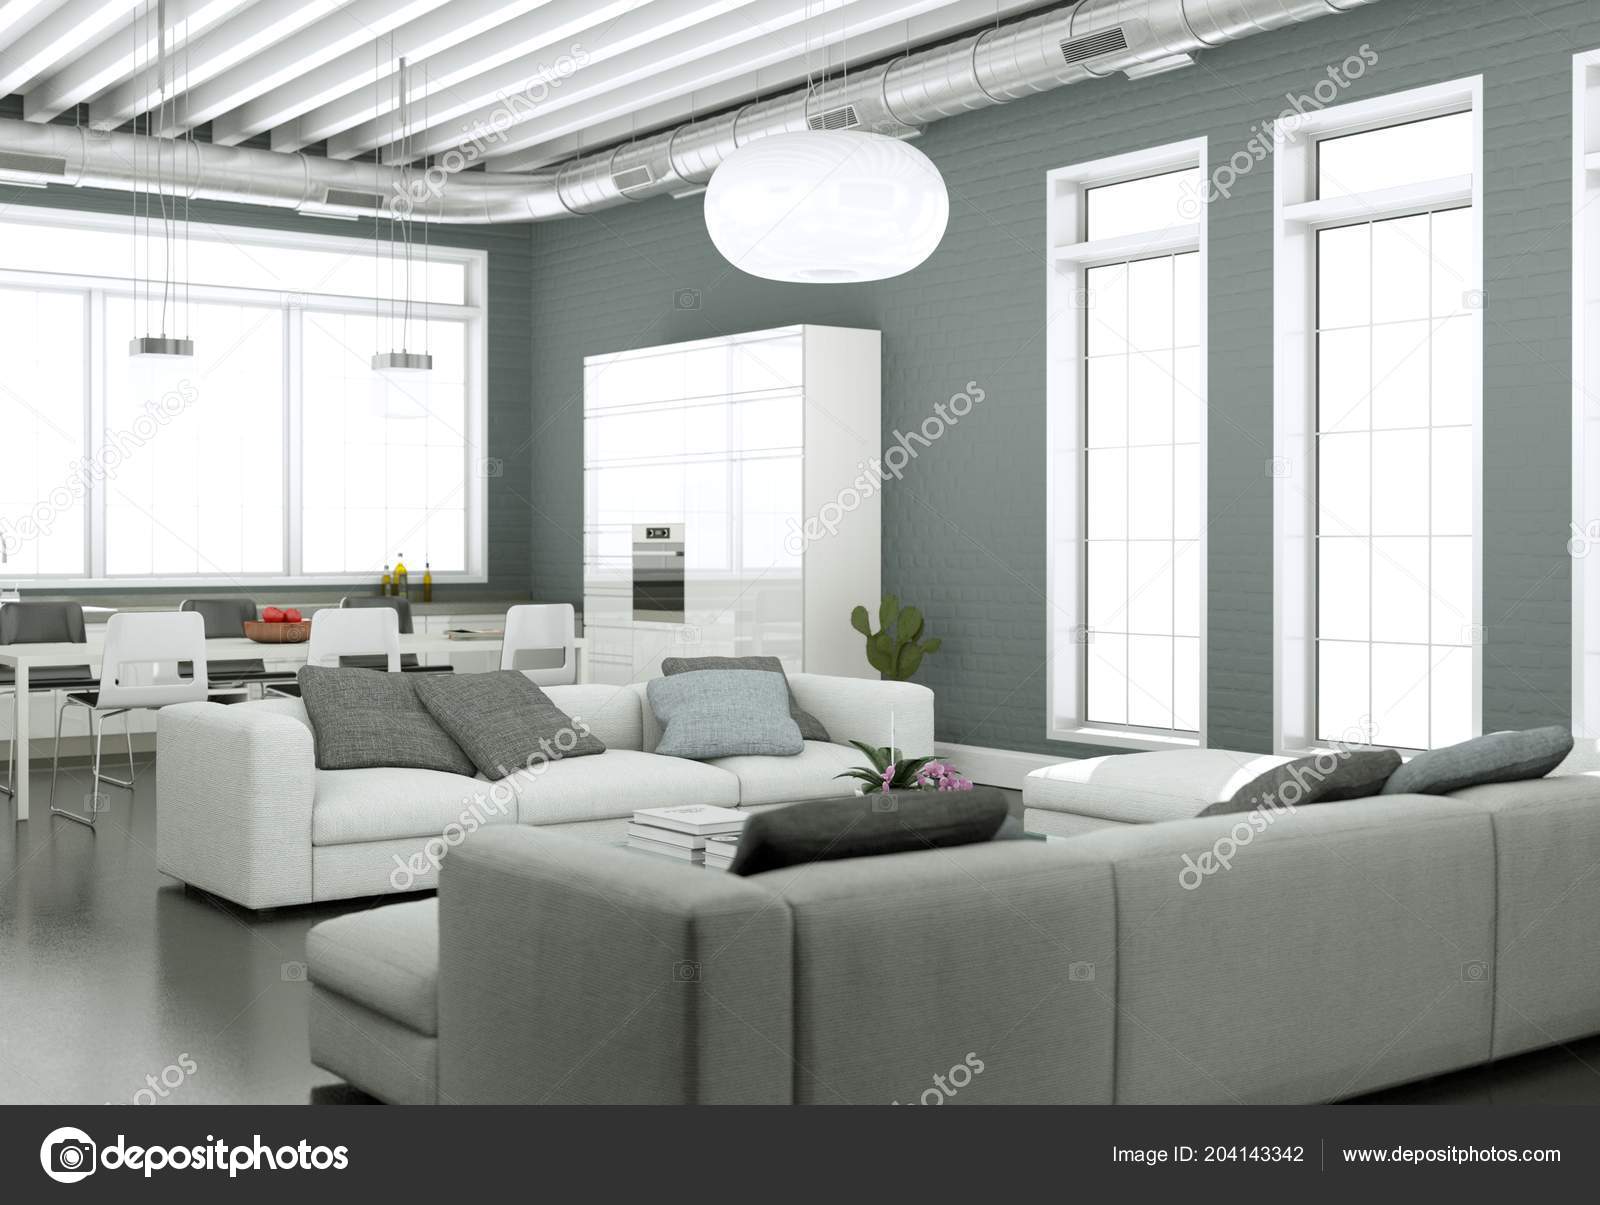 Fonkelnieuw Interieur van de moderne lichte woonkamer met sofa's en grijze TI-73